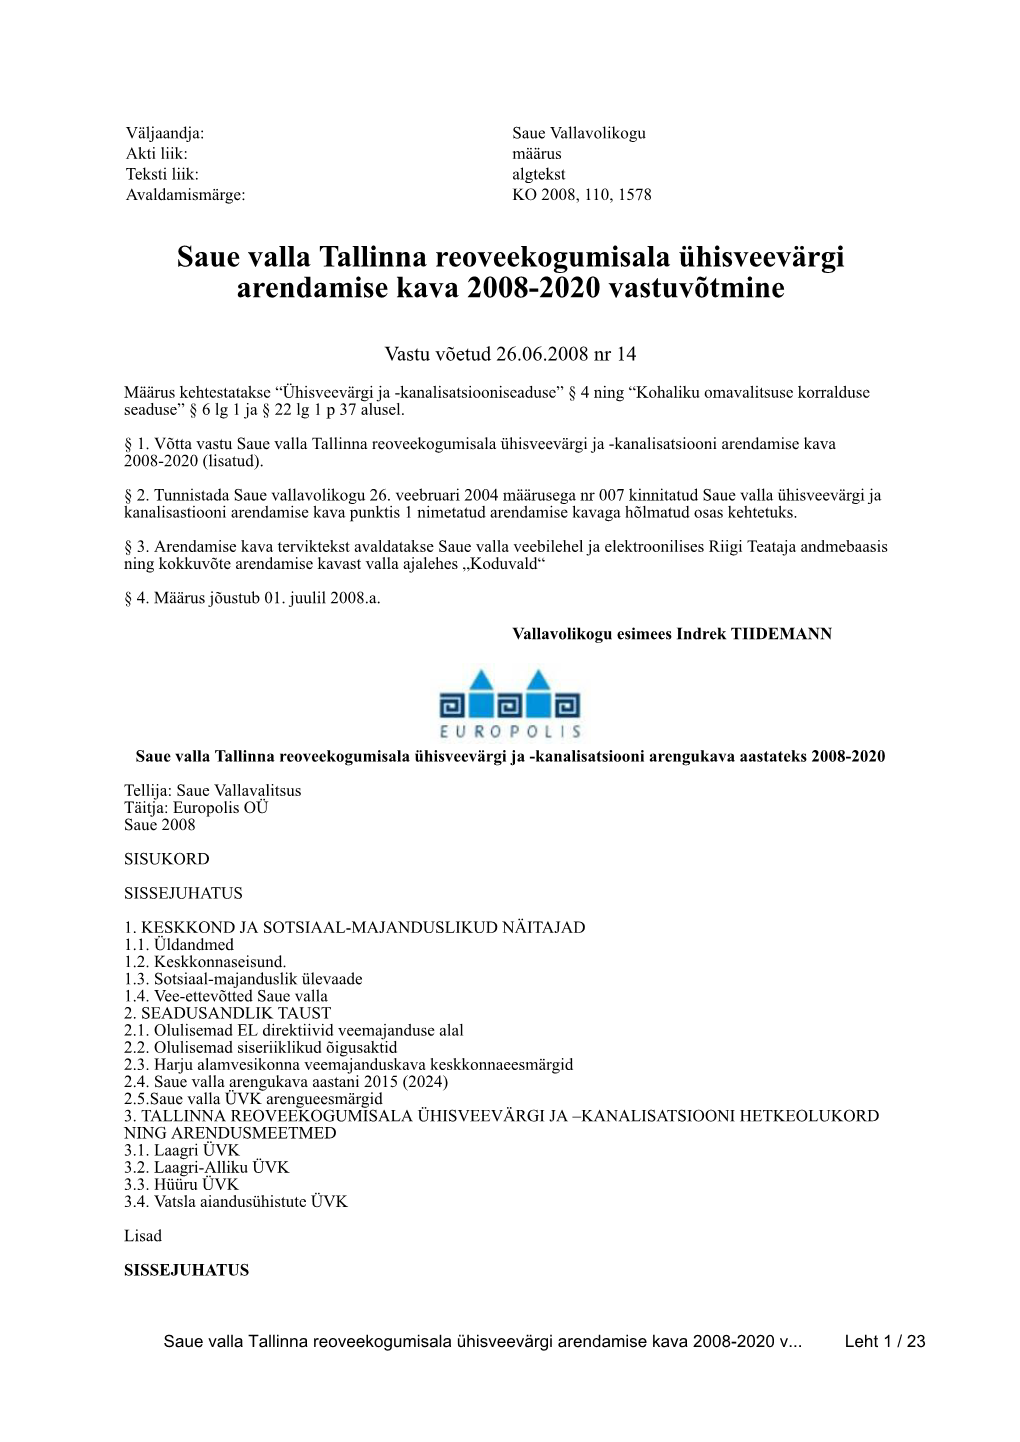 Saue Valla Tallinna Reoveekogumisala Ühisveevärgi Arendamise Kava 2008-2020 Vastuvõtmine